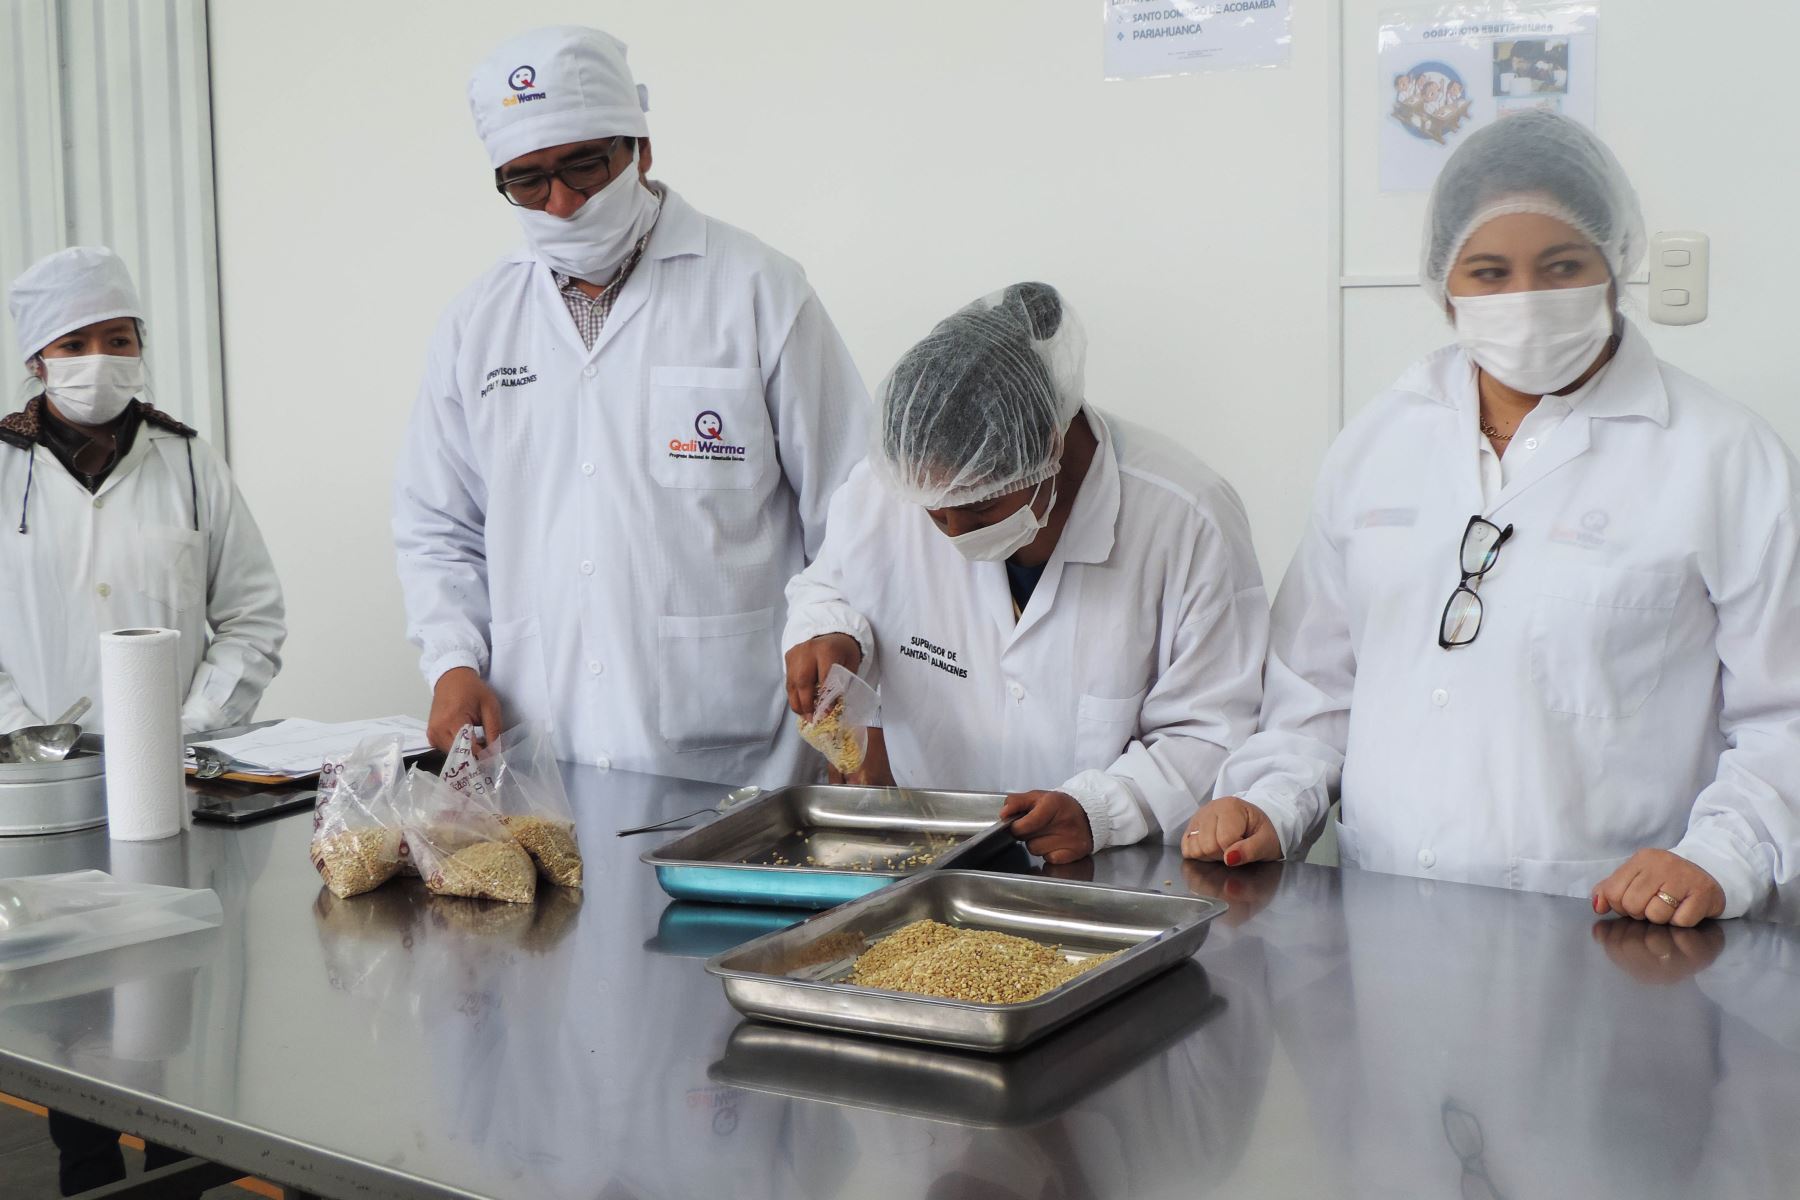 Supervisión de  la calidad e inocuidad de los nutritivos alimentos que consumirán diariamente los escolares de esta región del norte del país.Foto:ANDINA/Difusión